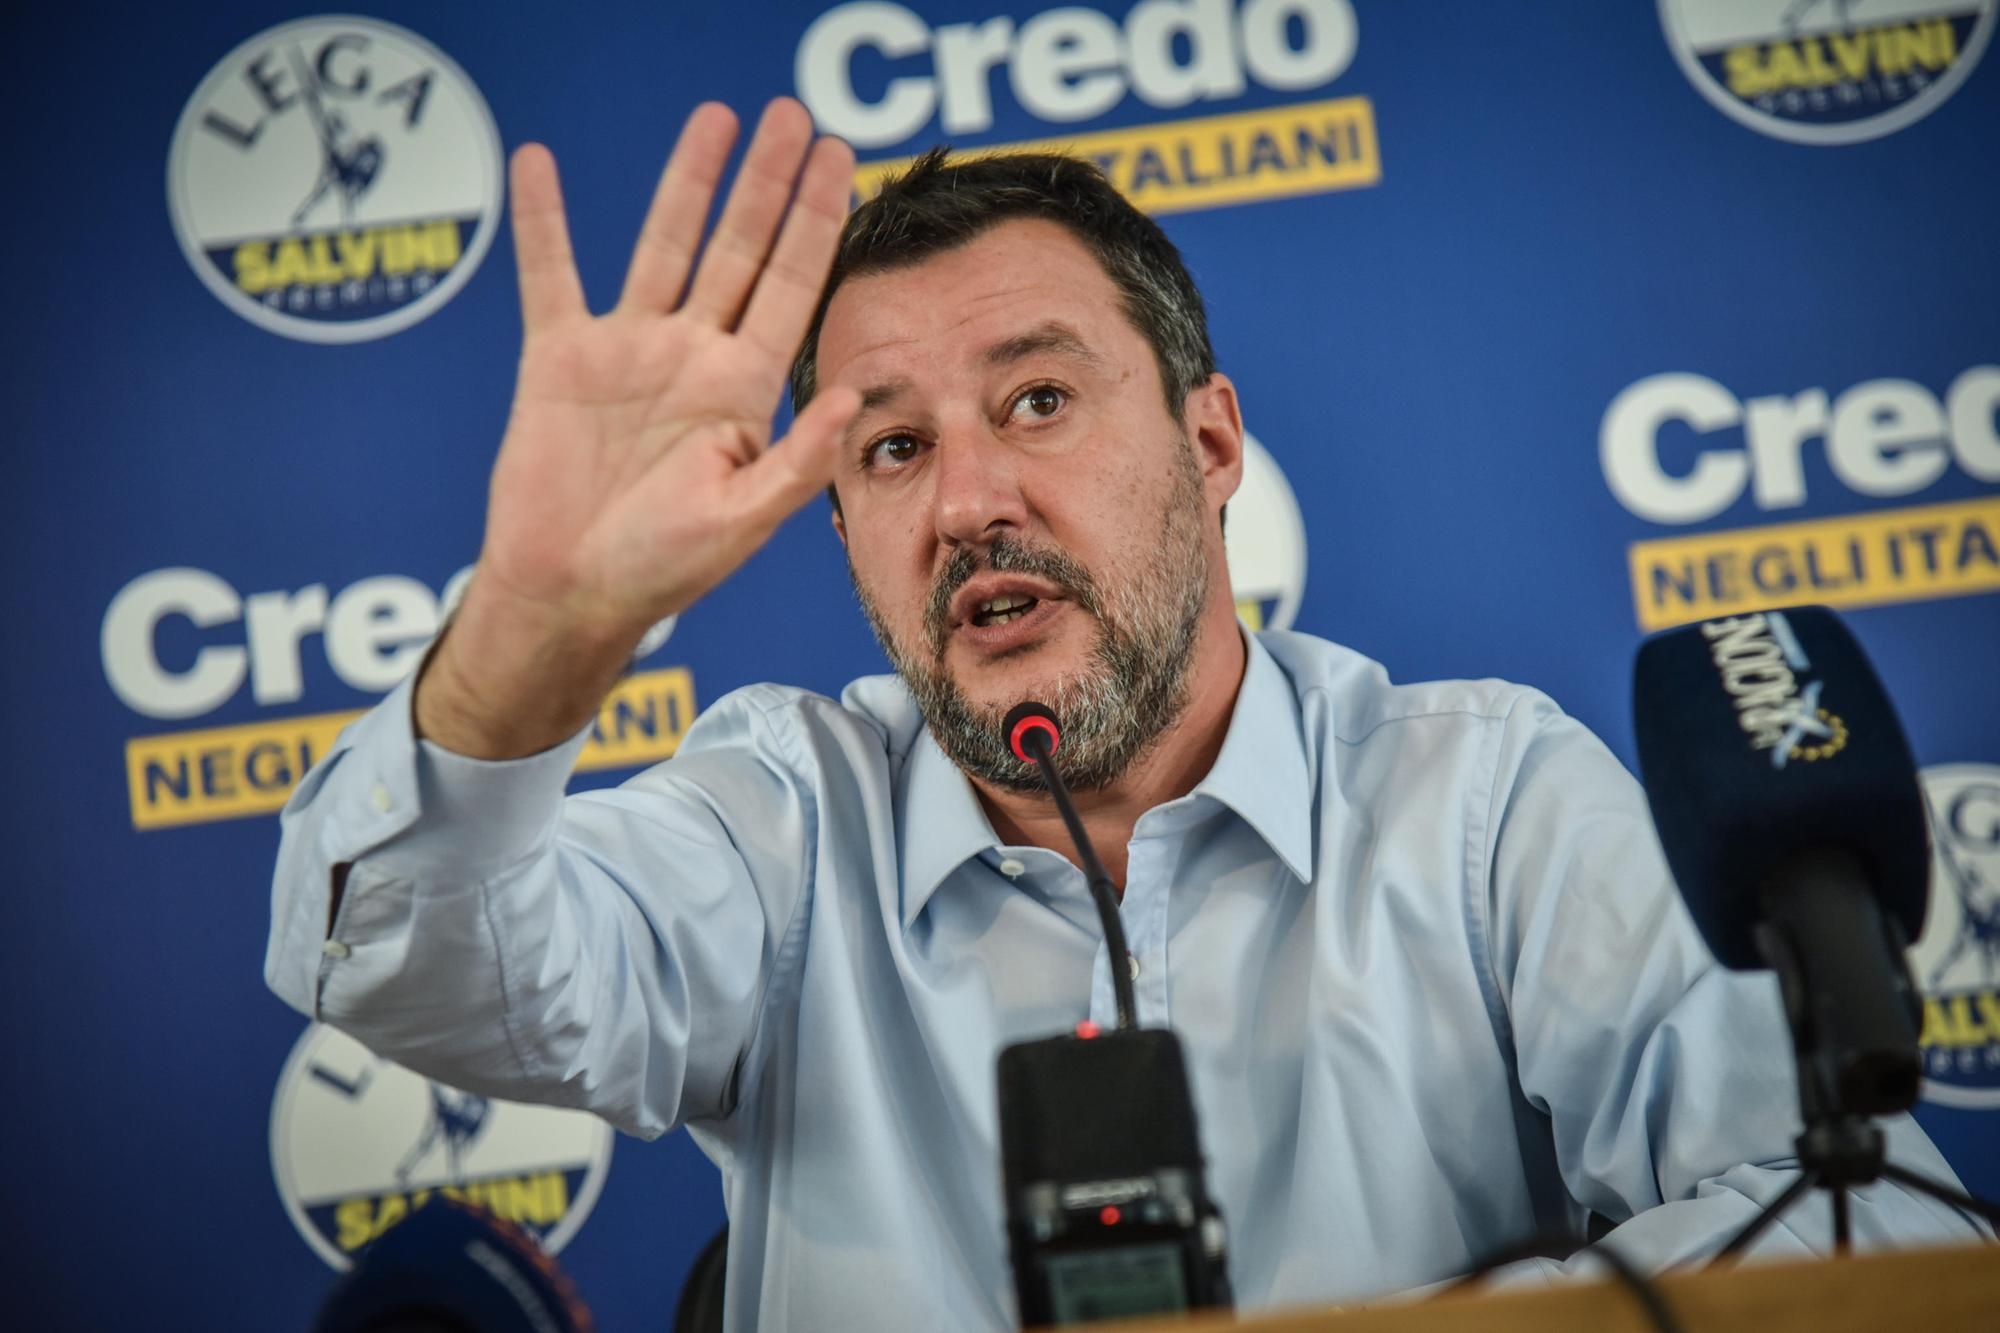 Flop Lega, Salvini sotto accusa. Maroni: “Serve un nuovo leader”